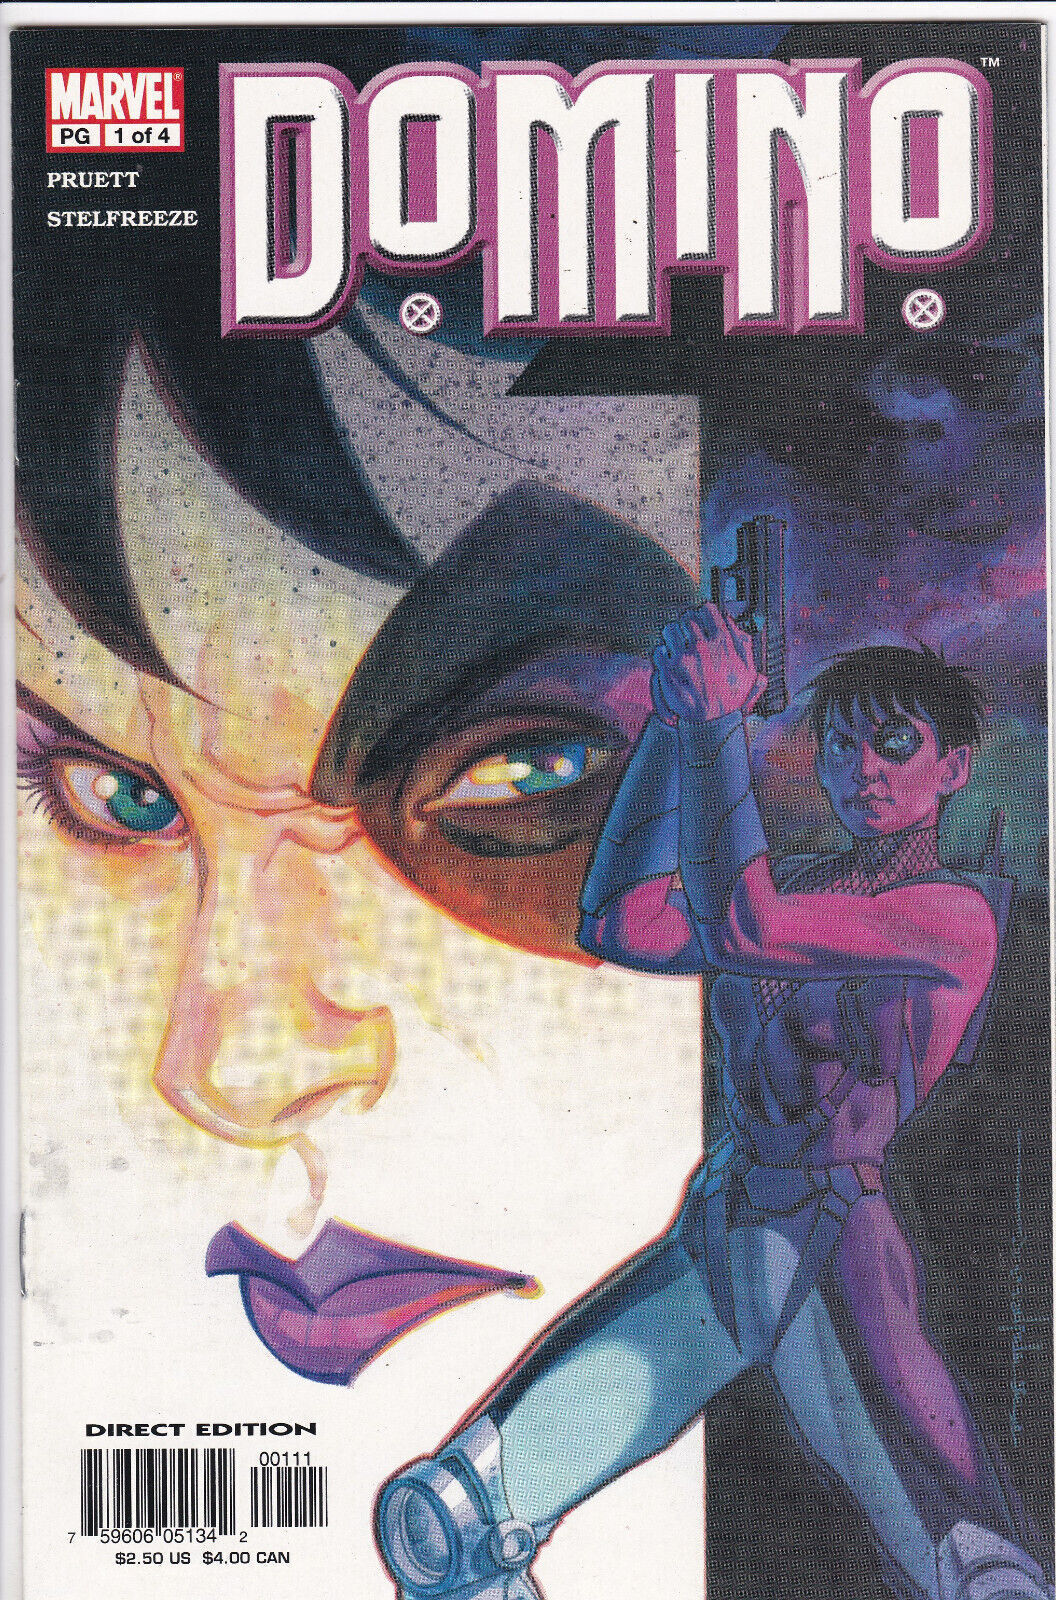 Domino  #1, Vol. 2 (2003) Marvel Comics